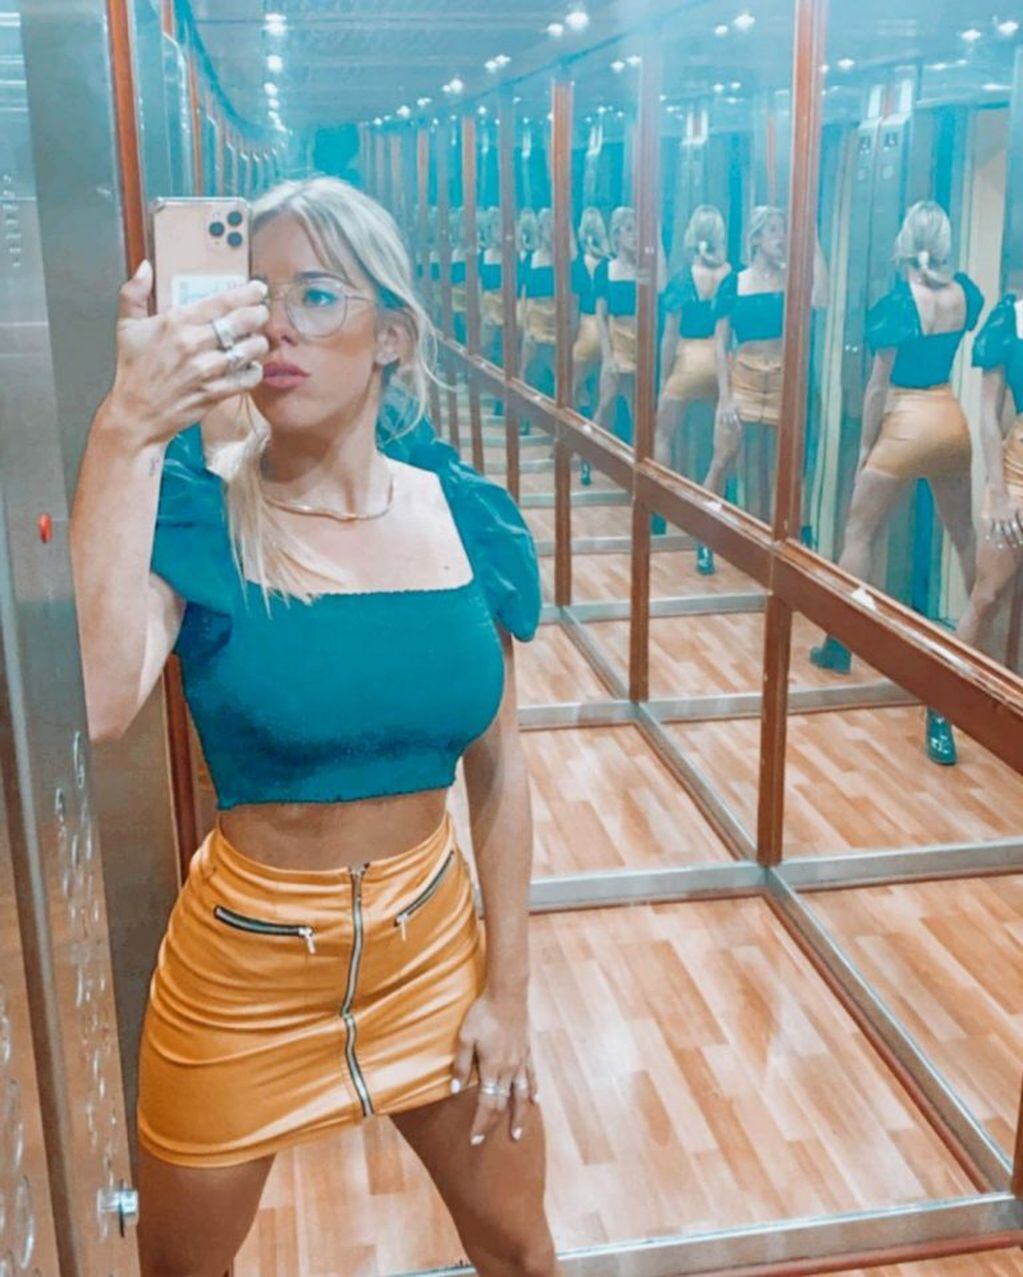 Nati Jota se sacó una selfie en el ascensor y un peculiar detalle se robó las miradas. (Instagram/@natijota)